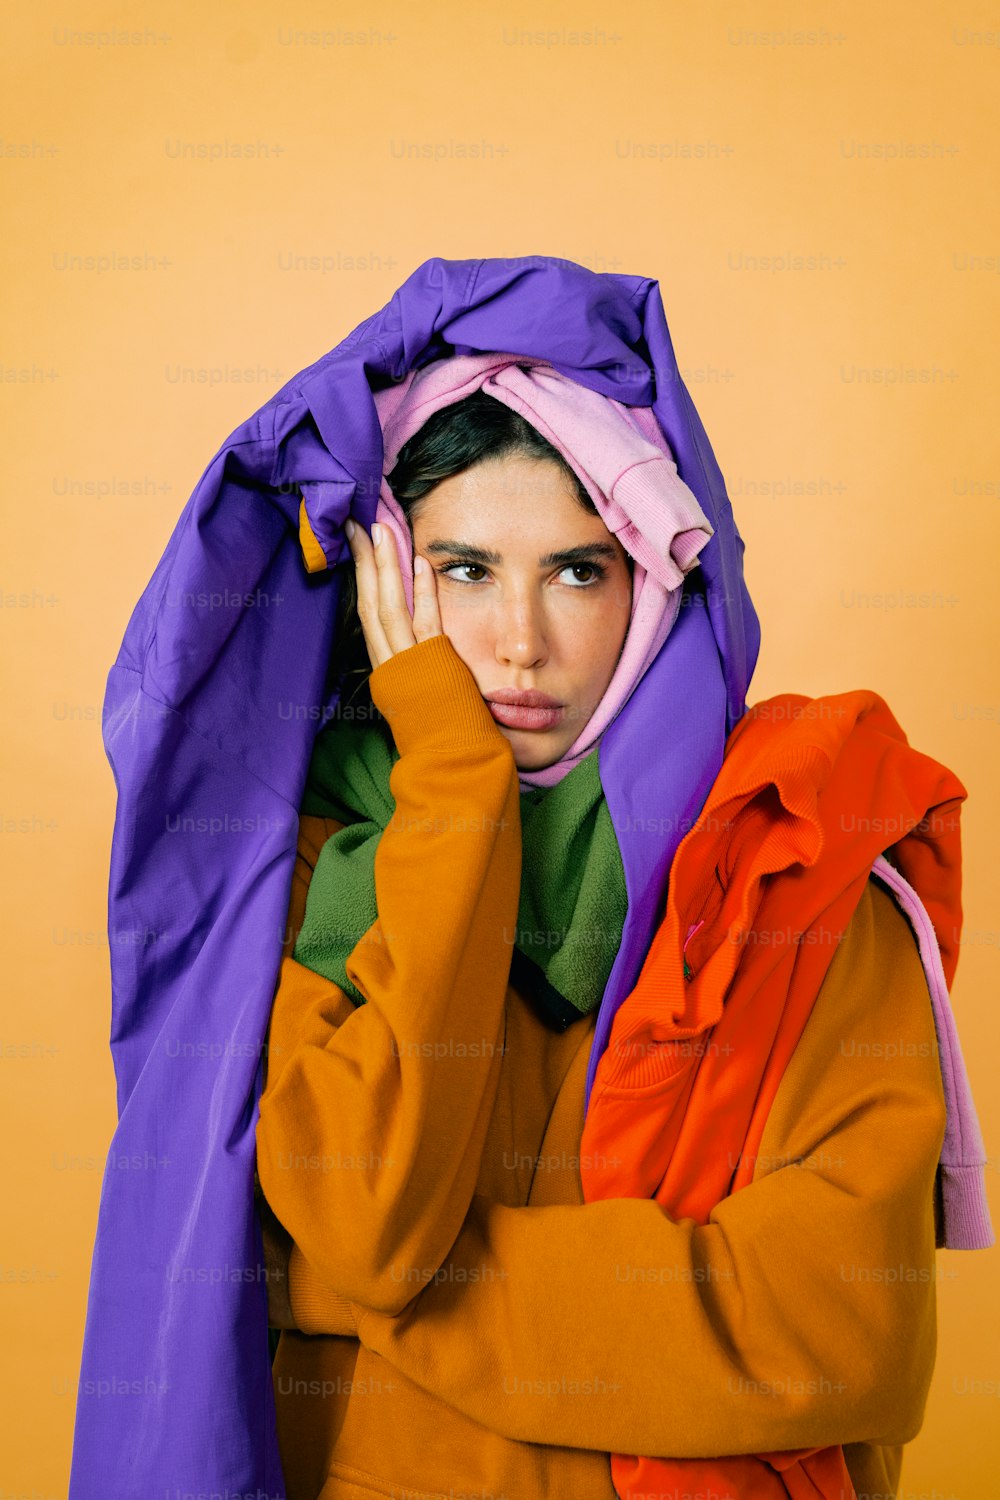 紫とオレンジのジャケットで顔を覆った女性